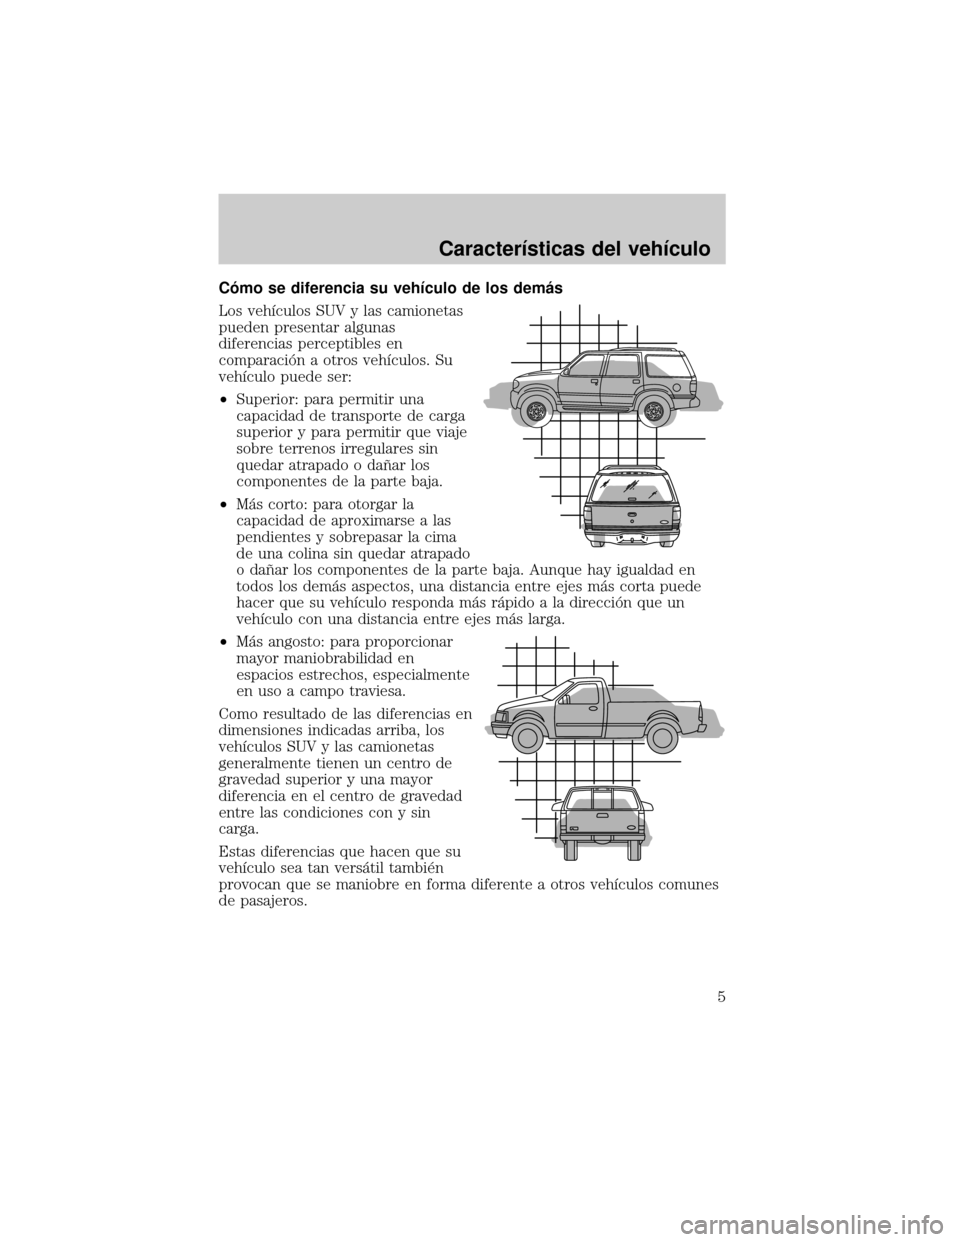 Mercury Mountaineer 2007  Manual de Usuario (in Spanish) Câmo se diferencia su vehÛculo de los demµs
Los vehÛculos SUV y las camionetas
pueden presentar algunas
diferencias perceptibles en
comparaciân a otros vehÛculos. Su
vehÛculo puede ser:
²Super